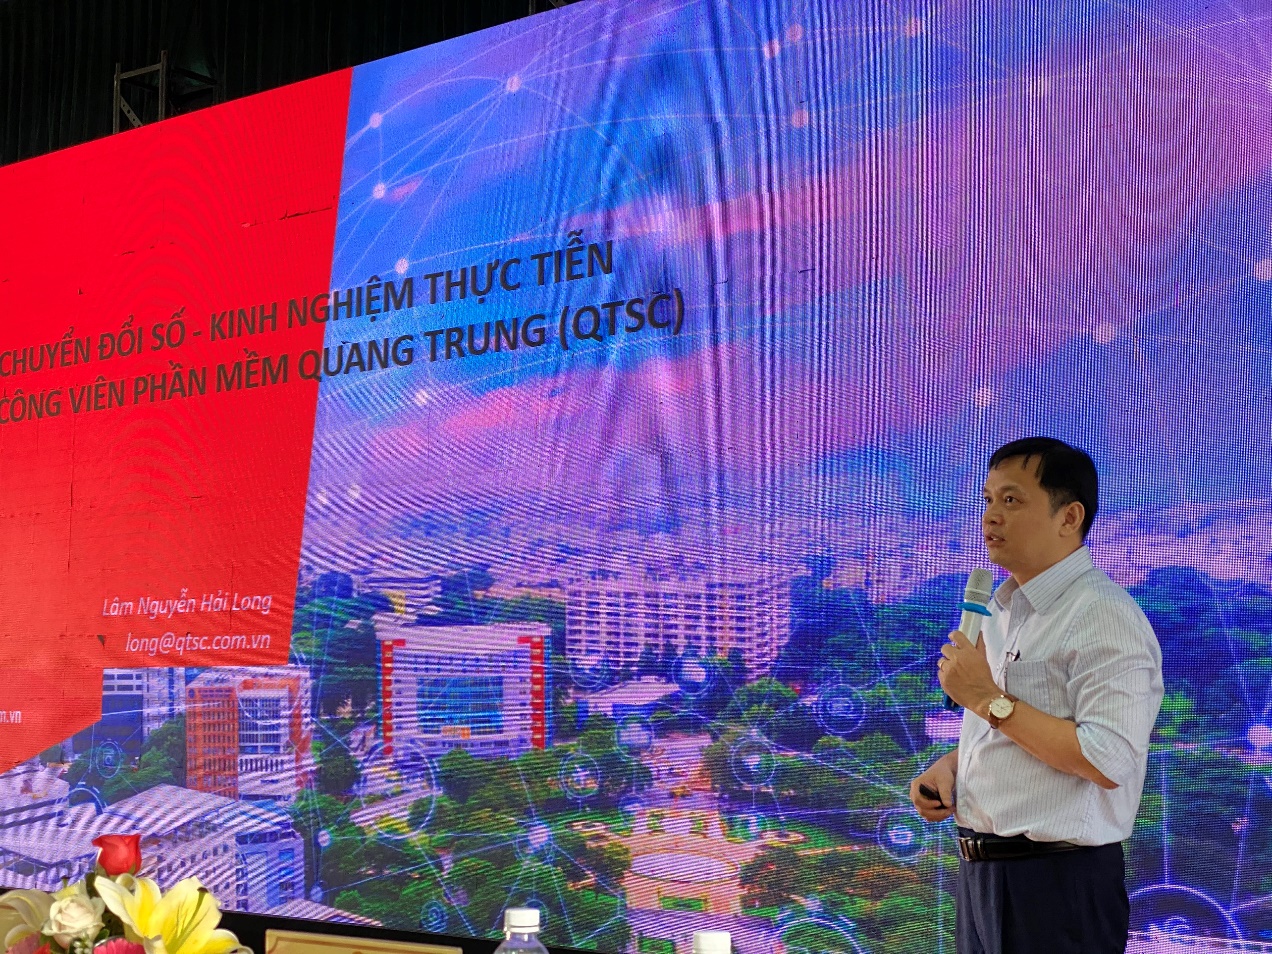 Hình 1: Ông Lâm Nguyễn Hải Long – Giám đốc QTSC chia sẻ những kinh nghiệm chuyển đổi số tại Công viên phần mềm Quang Trung